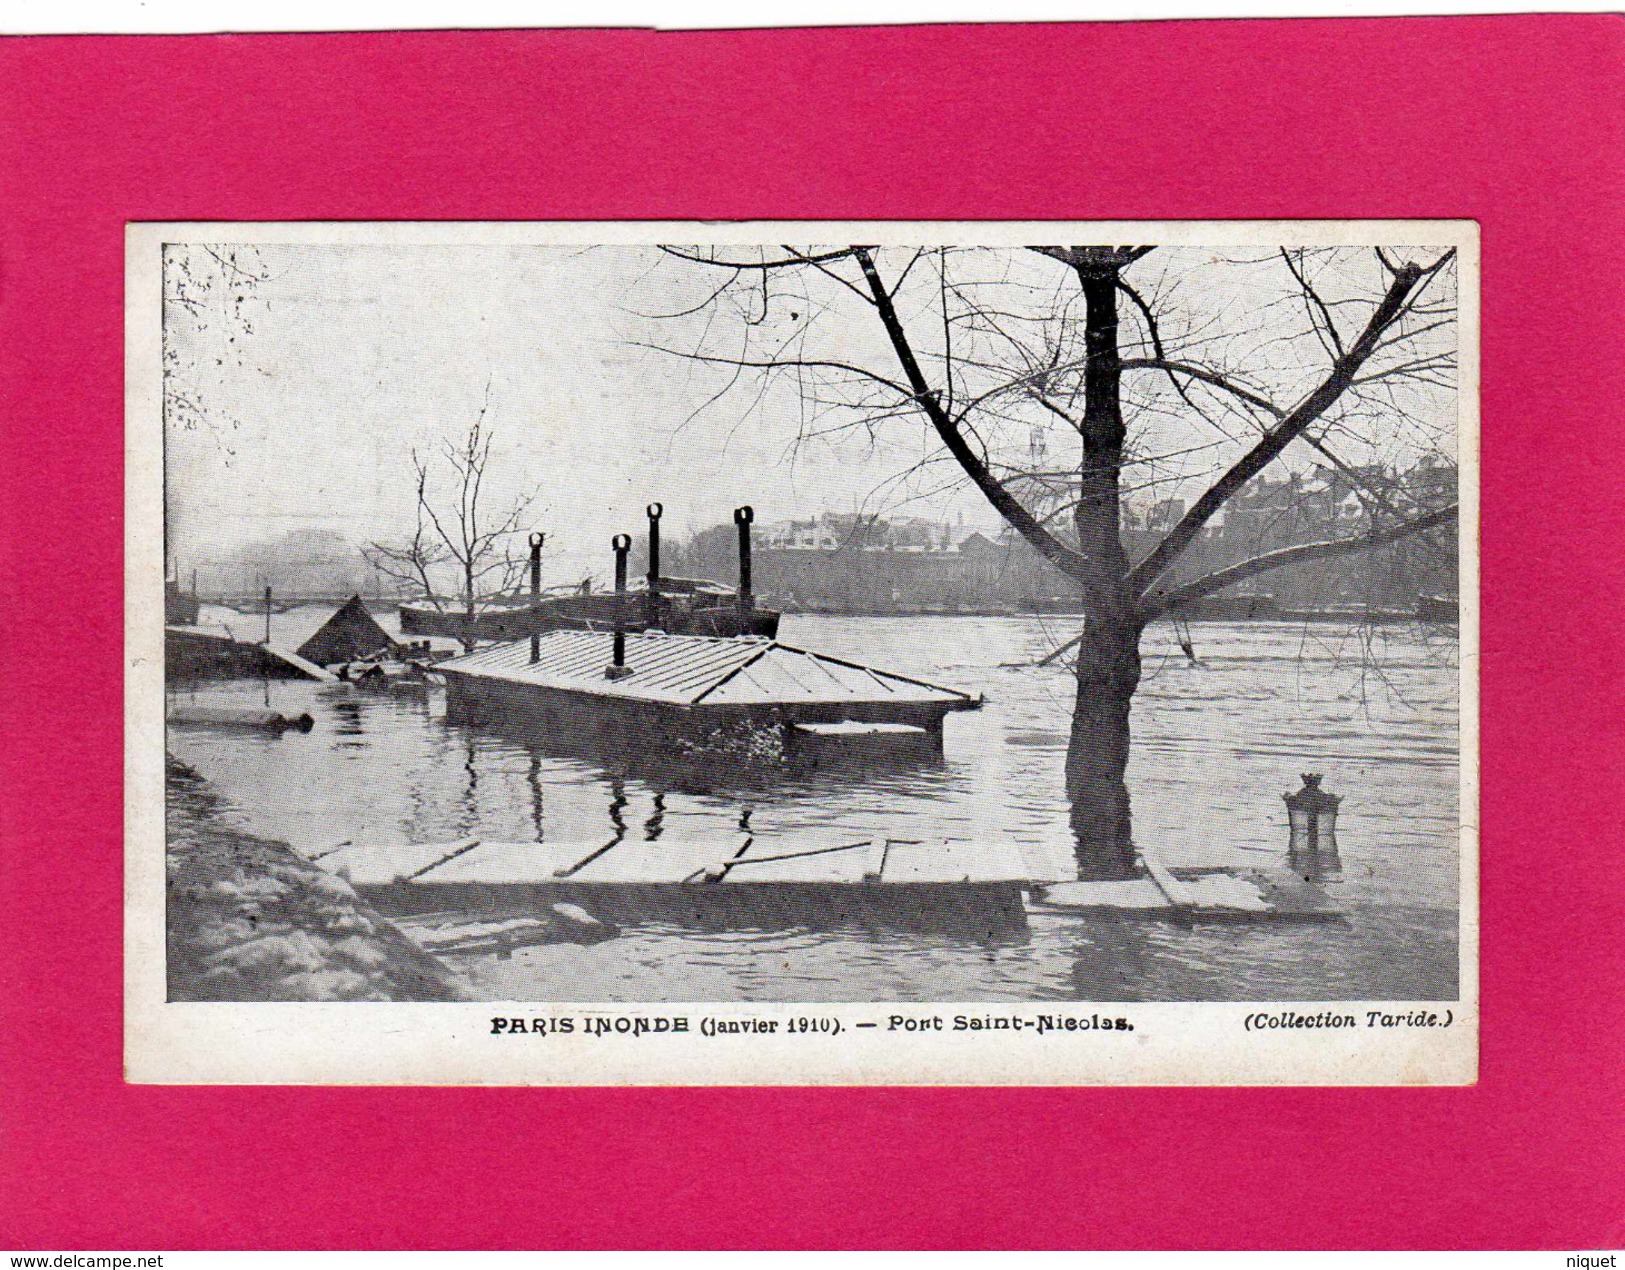 PARIS Inondé (janvier 1910), Port St-Nicolas, (Taride) - Paris Flood, 1910